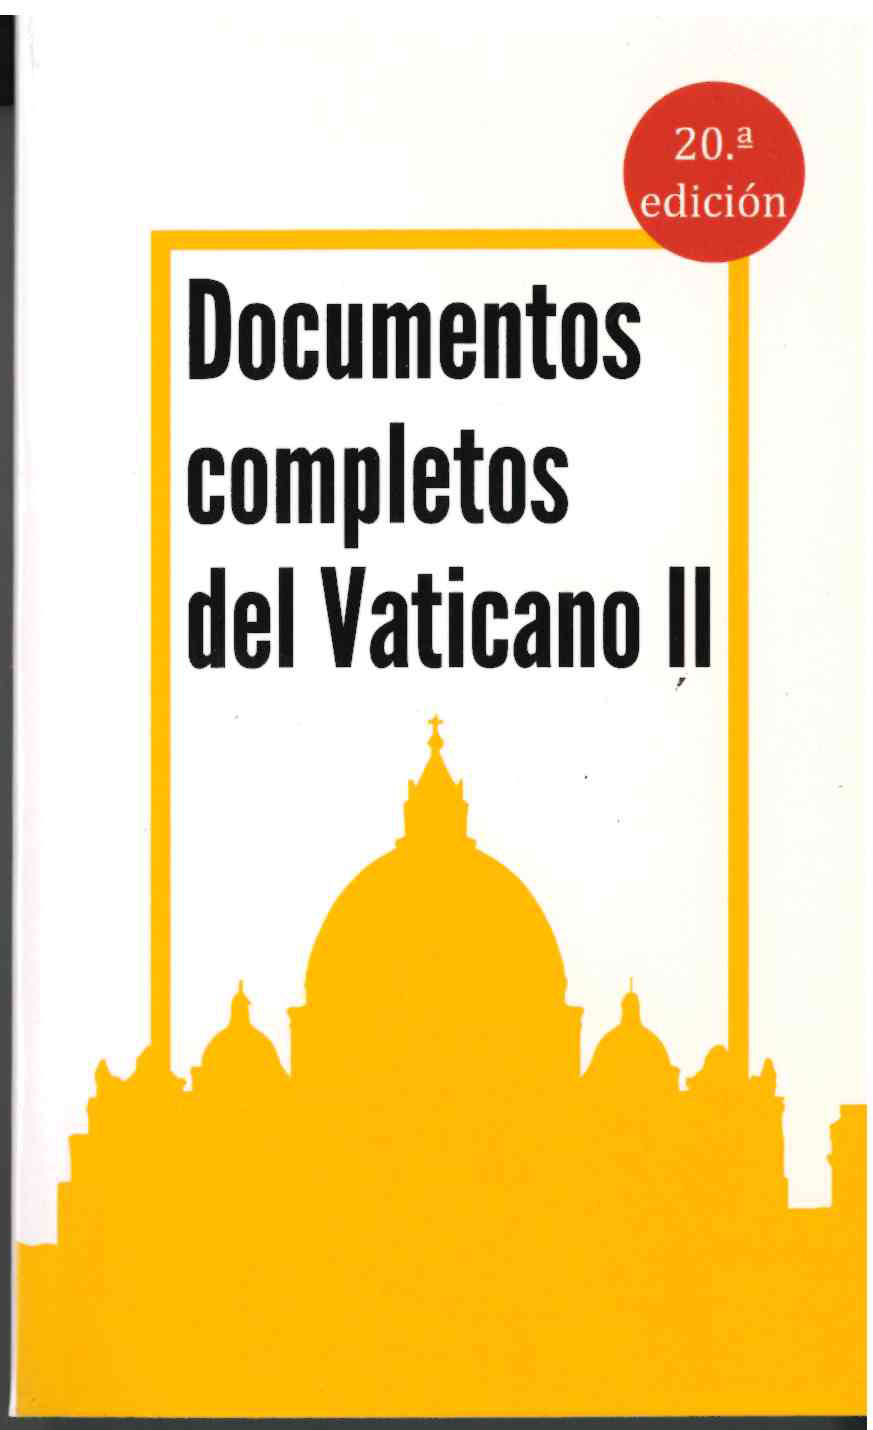 Documentos Completos del Vaticano II.  Ediciones Mensajero 2017. SIN USAR